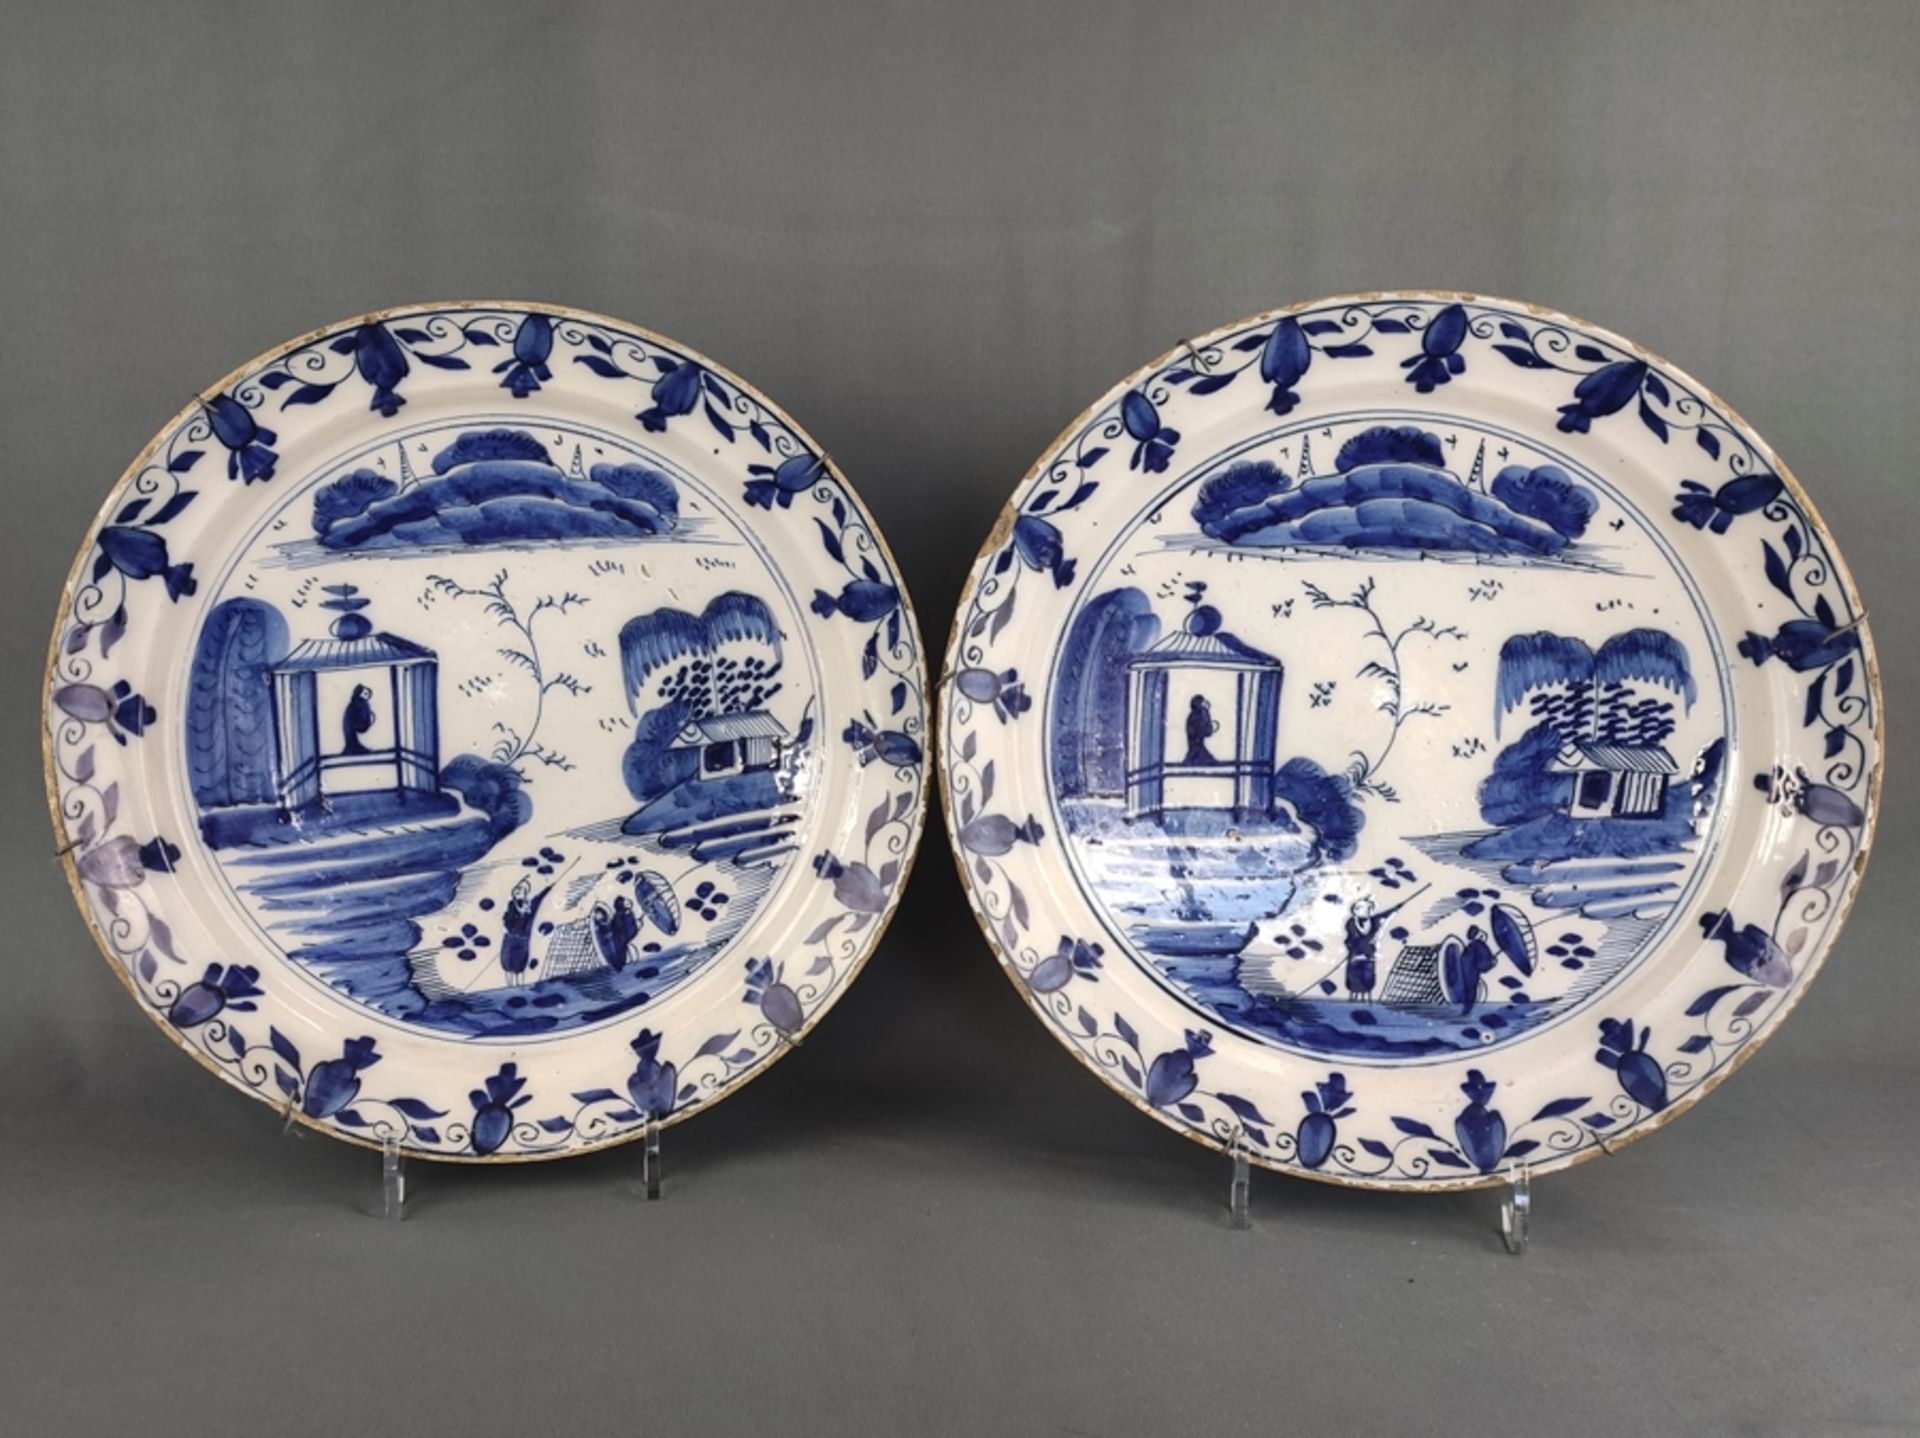 Großes Teller-Paar, China, leicht getieft, dekoriert in Blaumalerei, im Spiegel Personenstaffage, 1